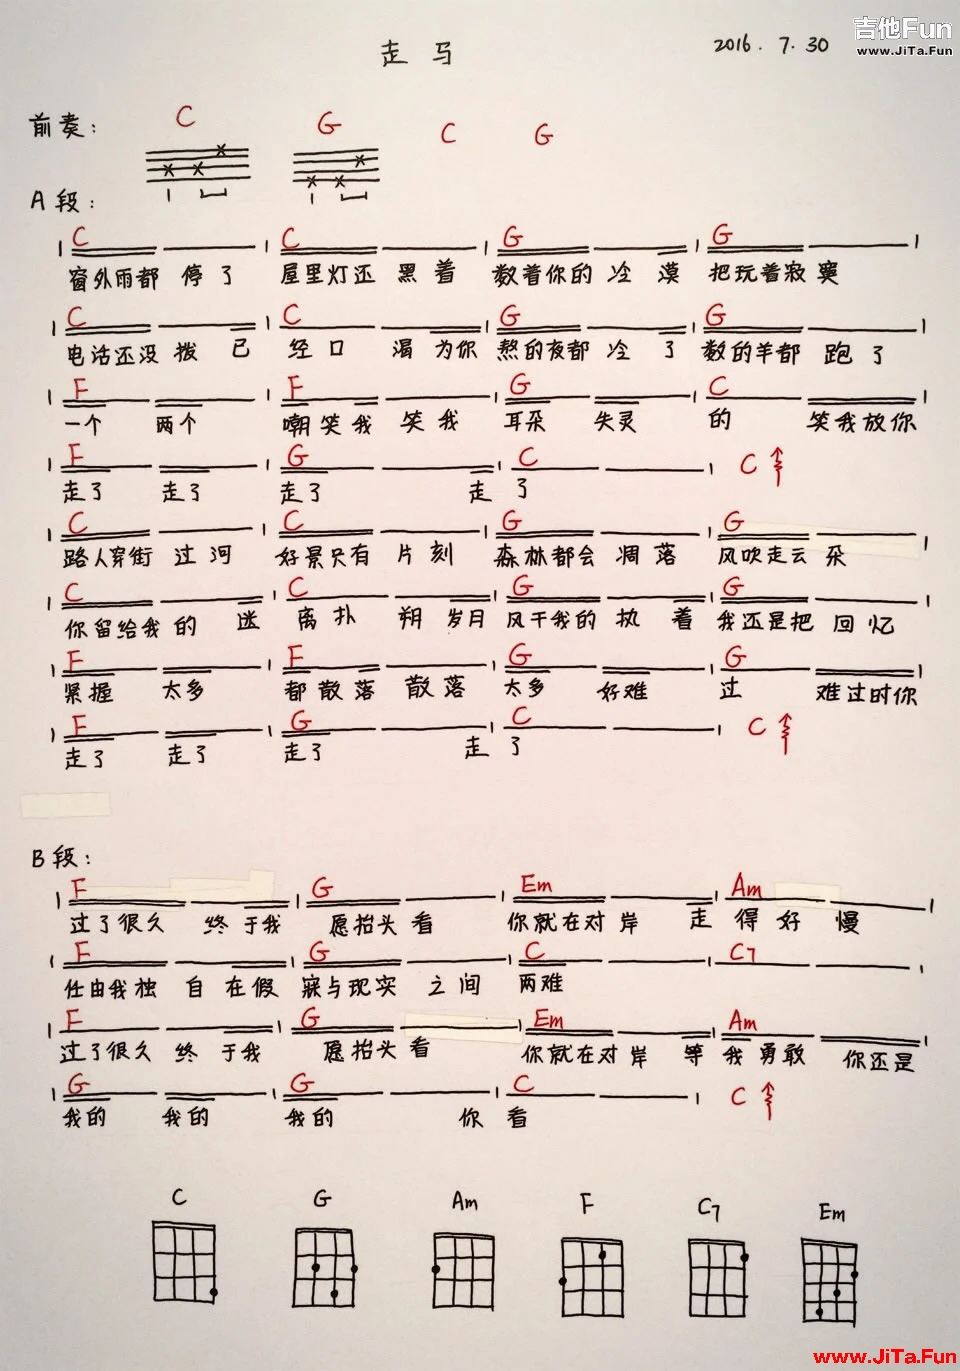 陳粒走馬ukulele烏克麗麗譜